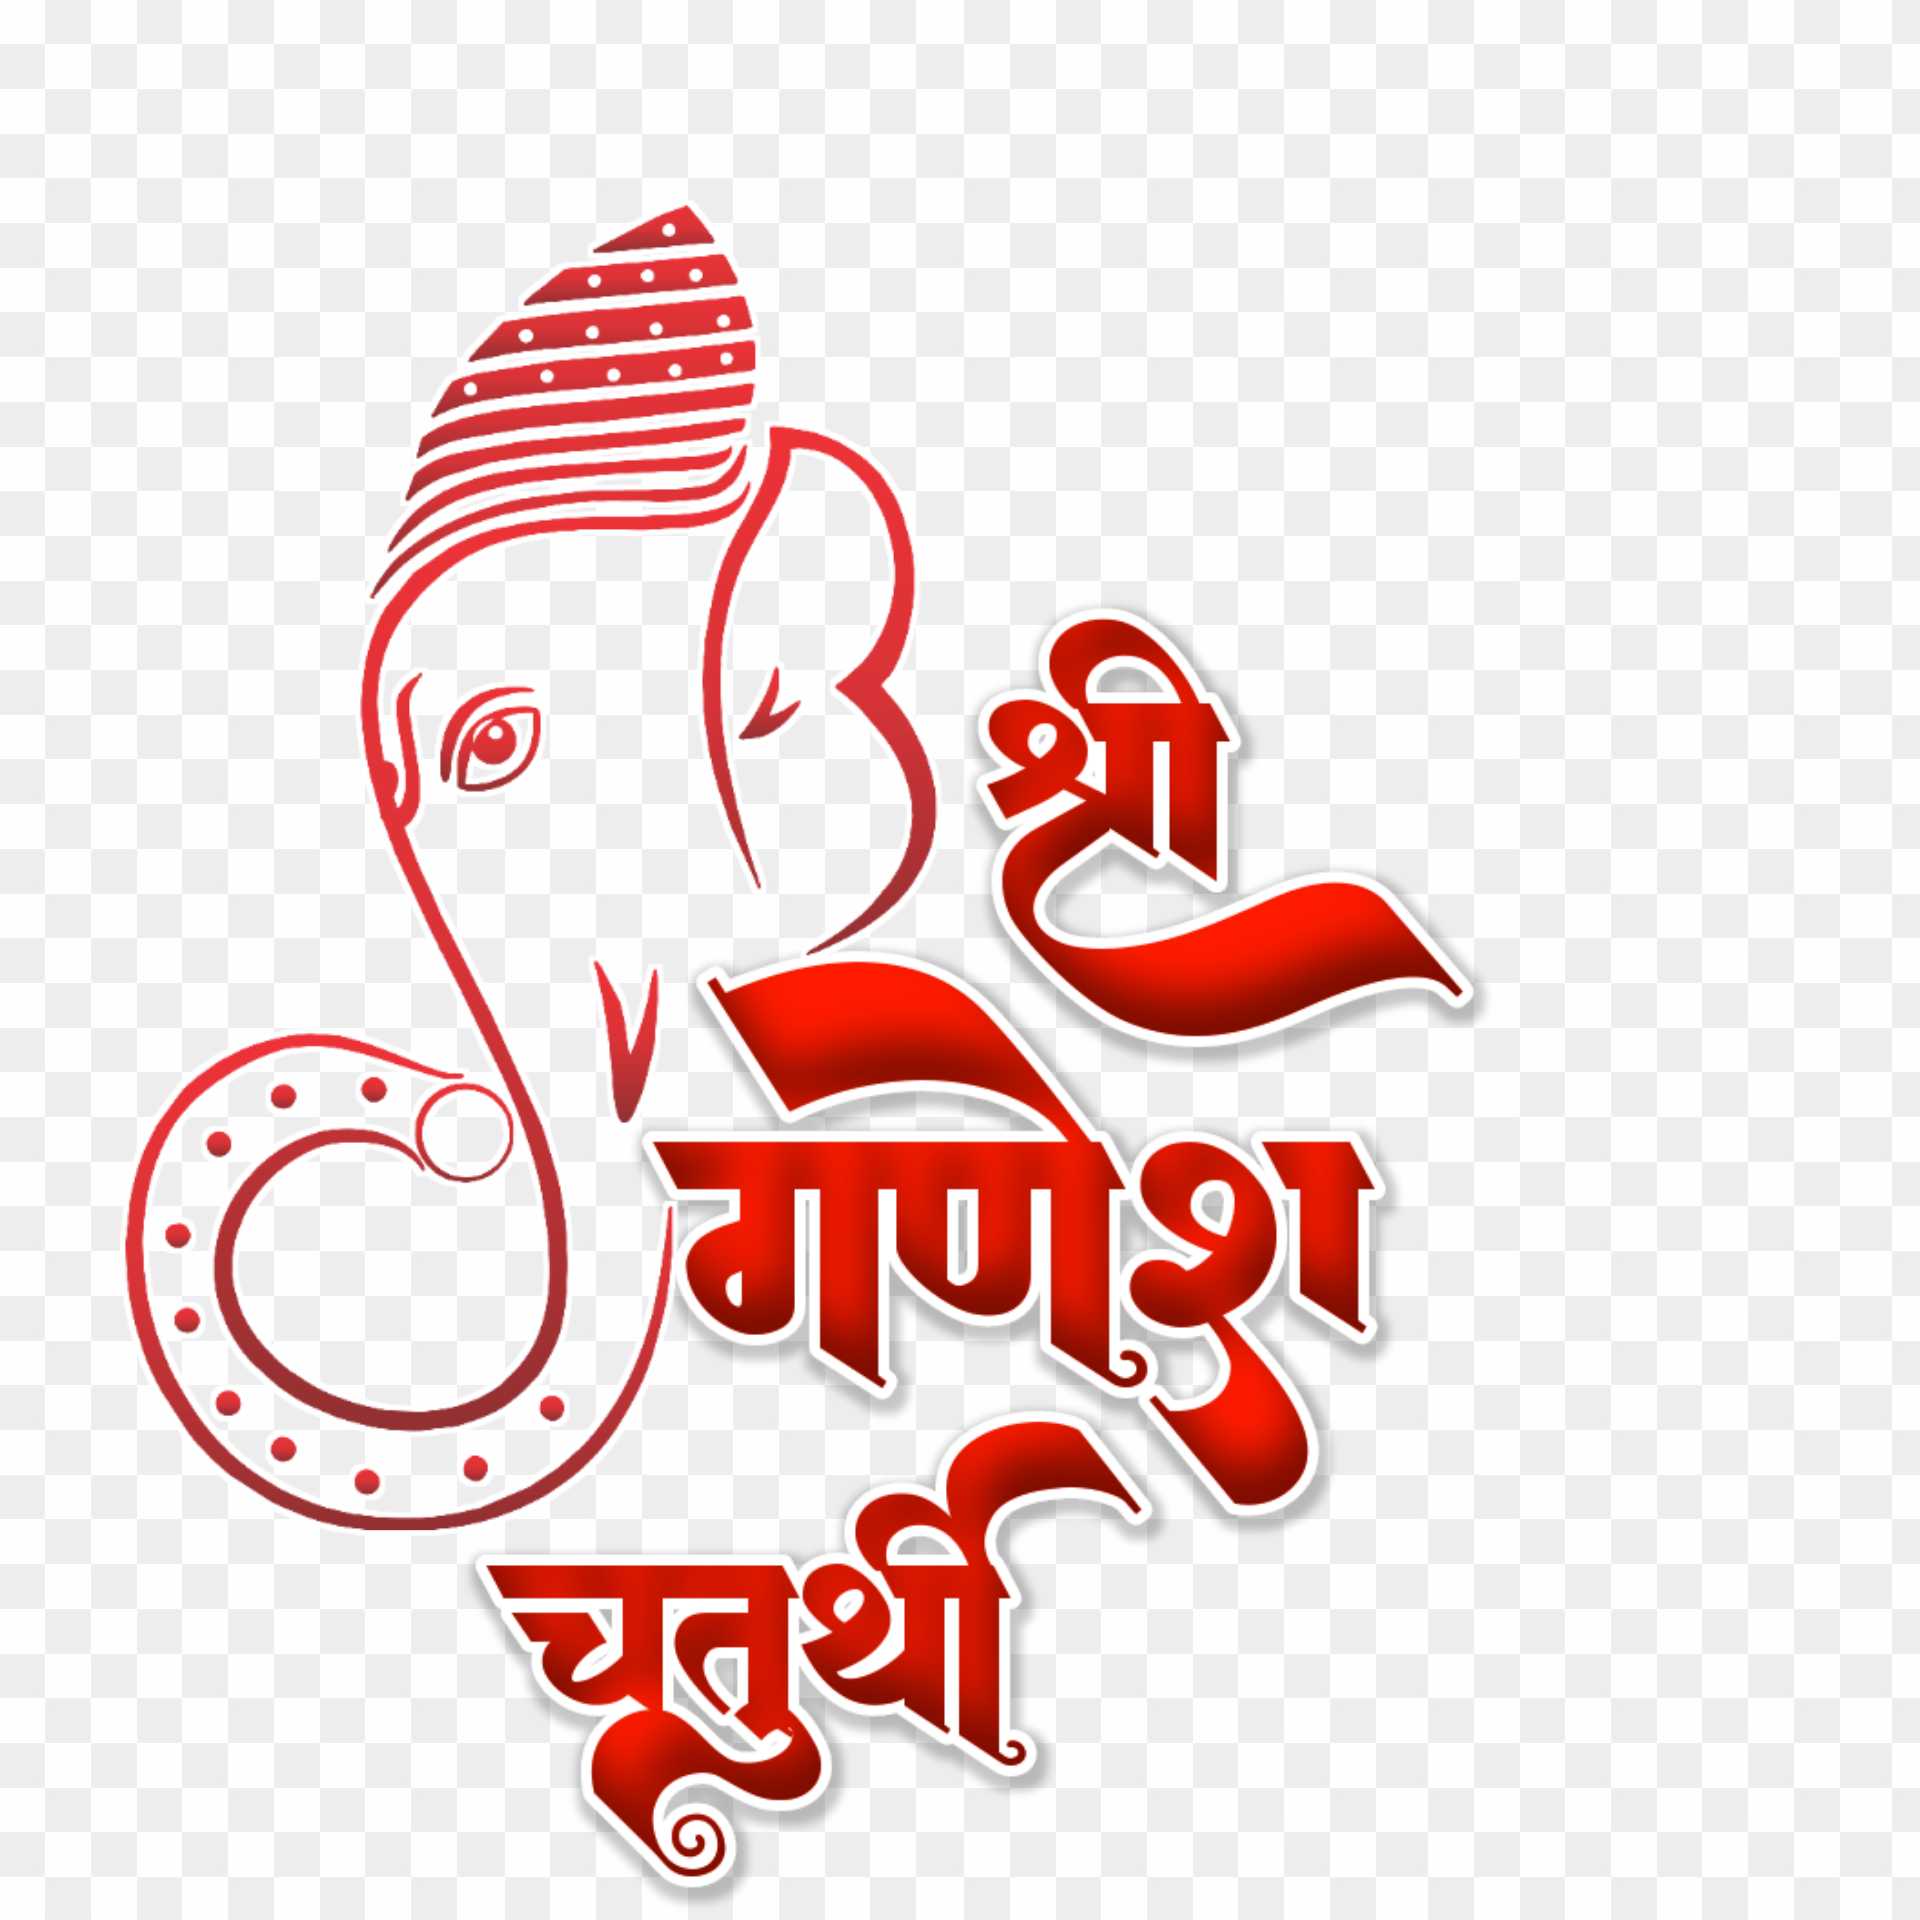 Ganesh Chaturthi PNG transparent images free download| Ganesh Chaturthi text PNG